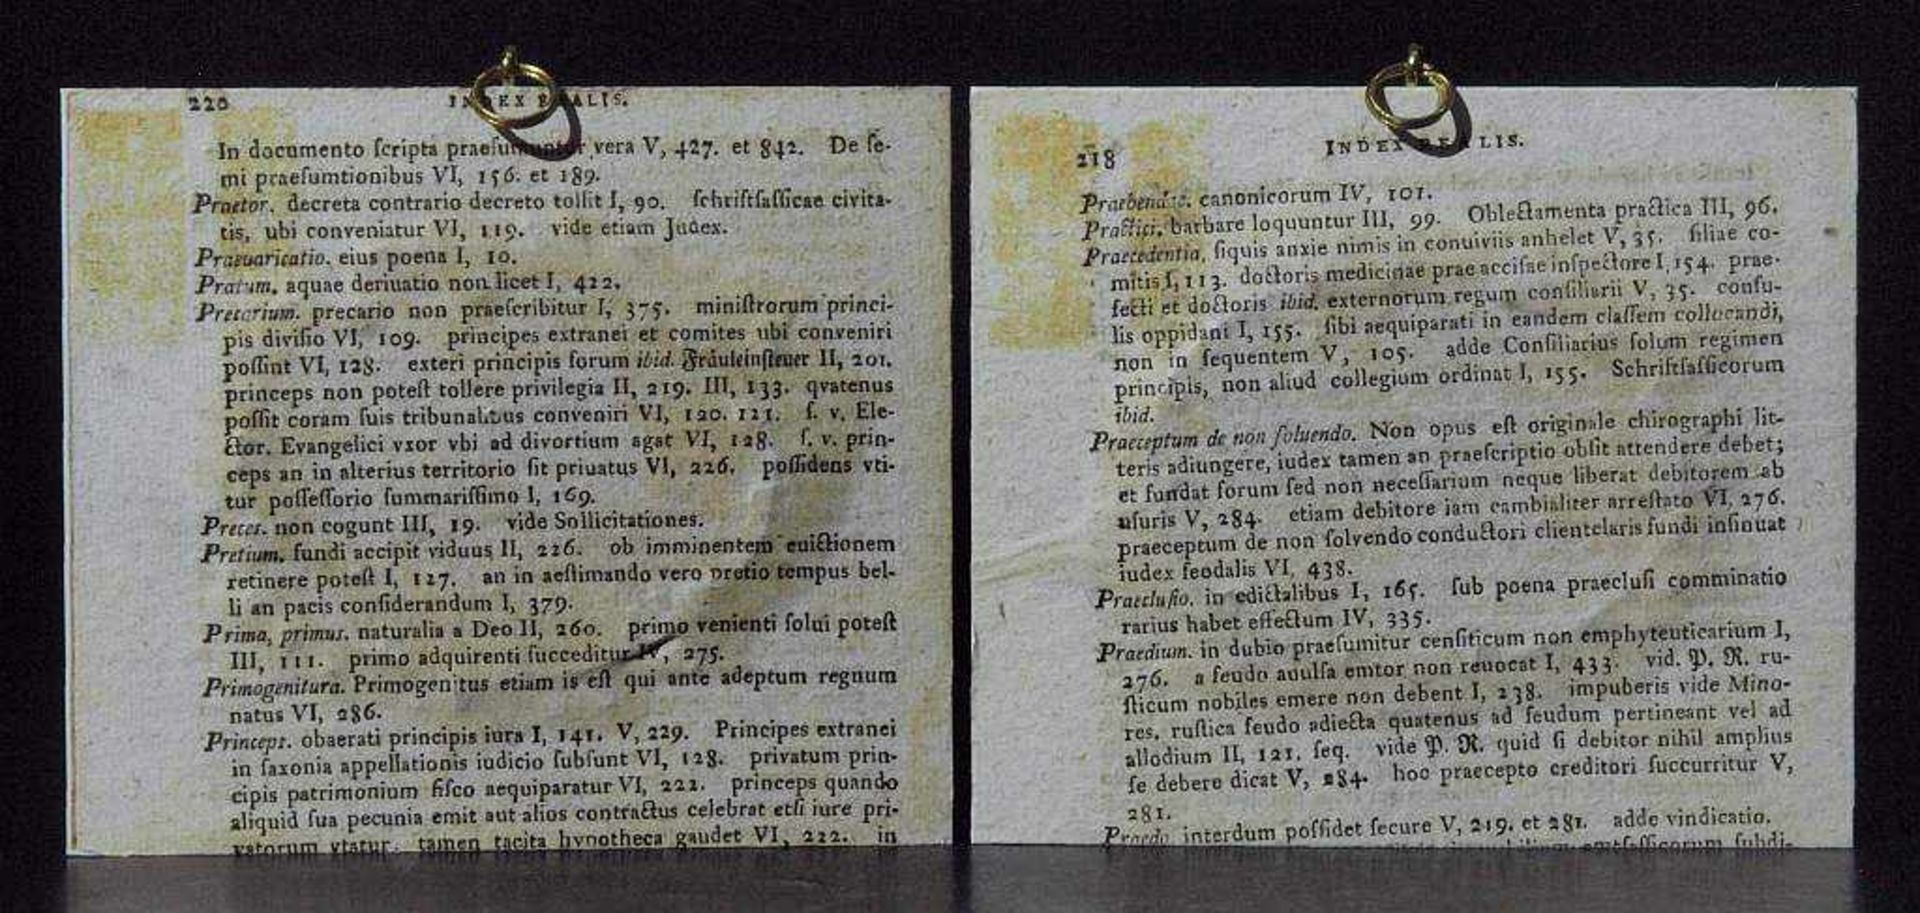 Zwei Elfenbeinminiaturen nach Spitzweg: "Der Pirschgang". "Der Alchimist". Zwei Elfenbeinminiaturen. - Bild 3 aus 3